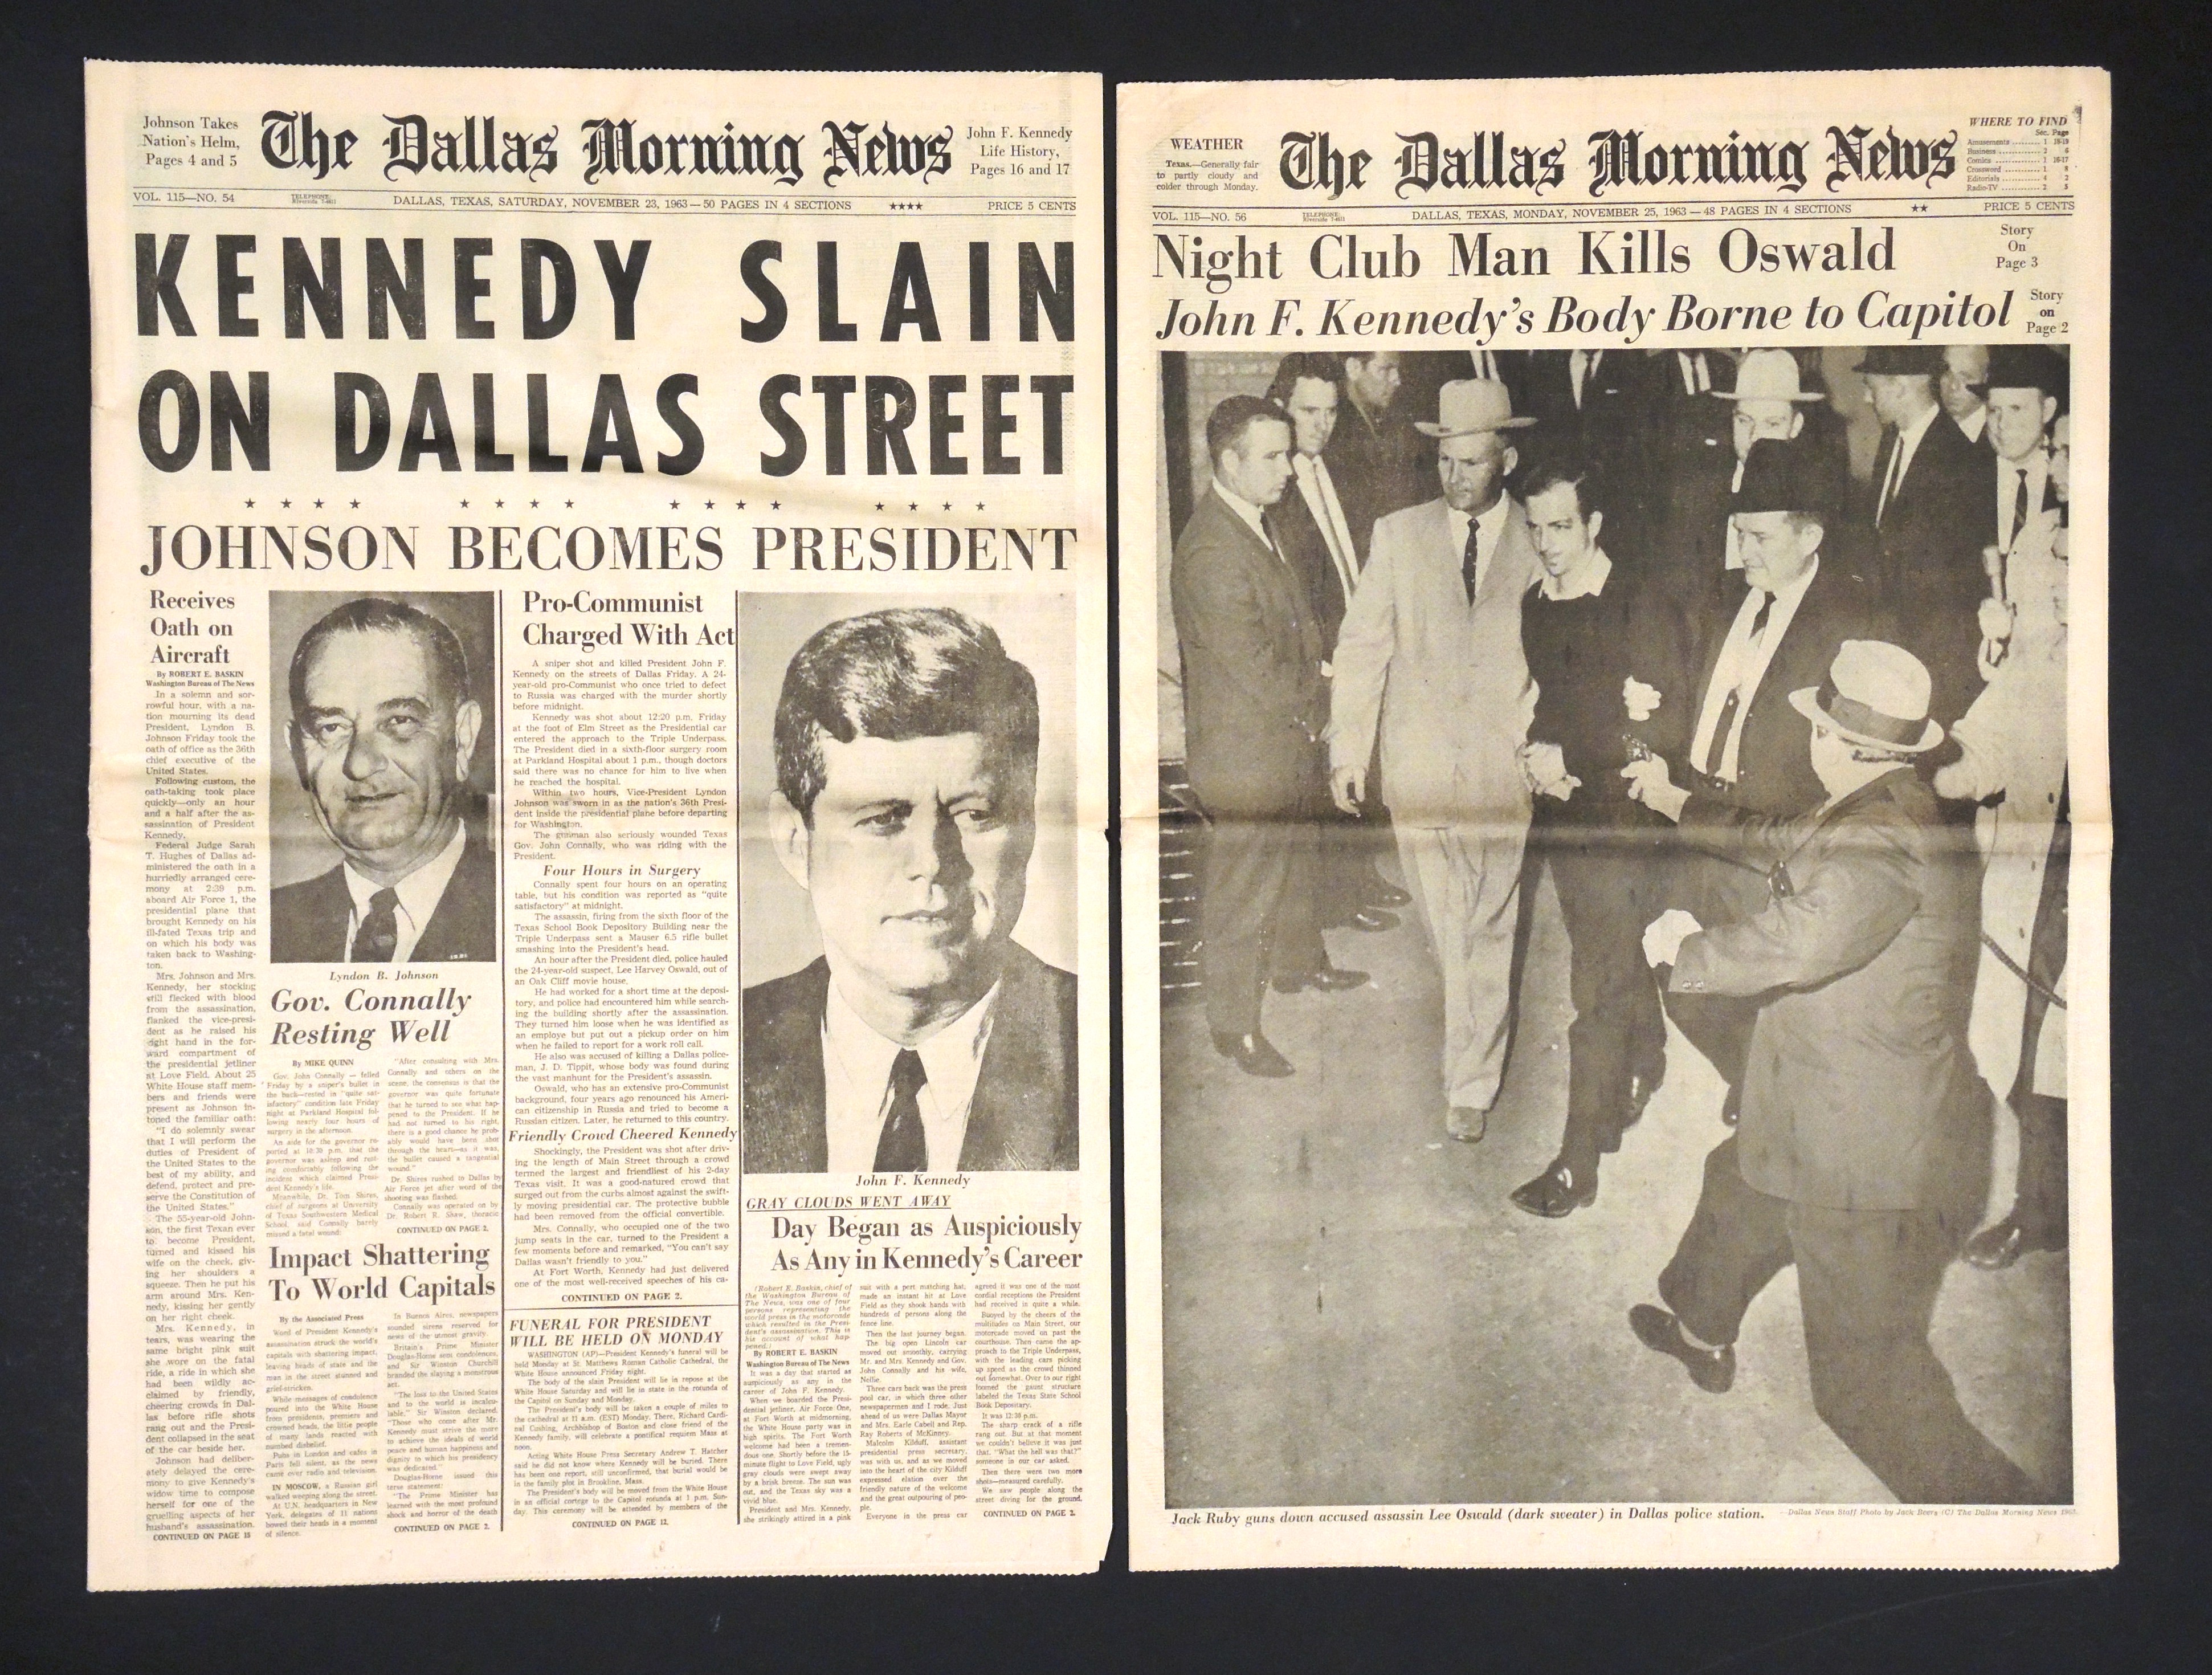 Dallasban, a meggyilkolt Kennedy elnök nyomaiban